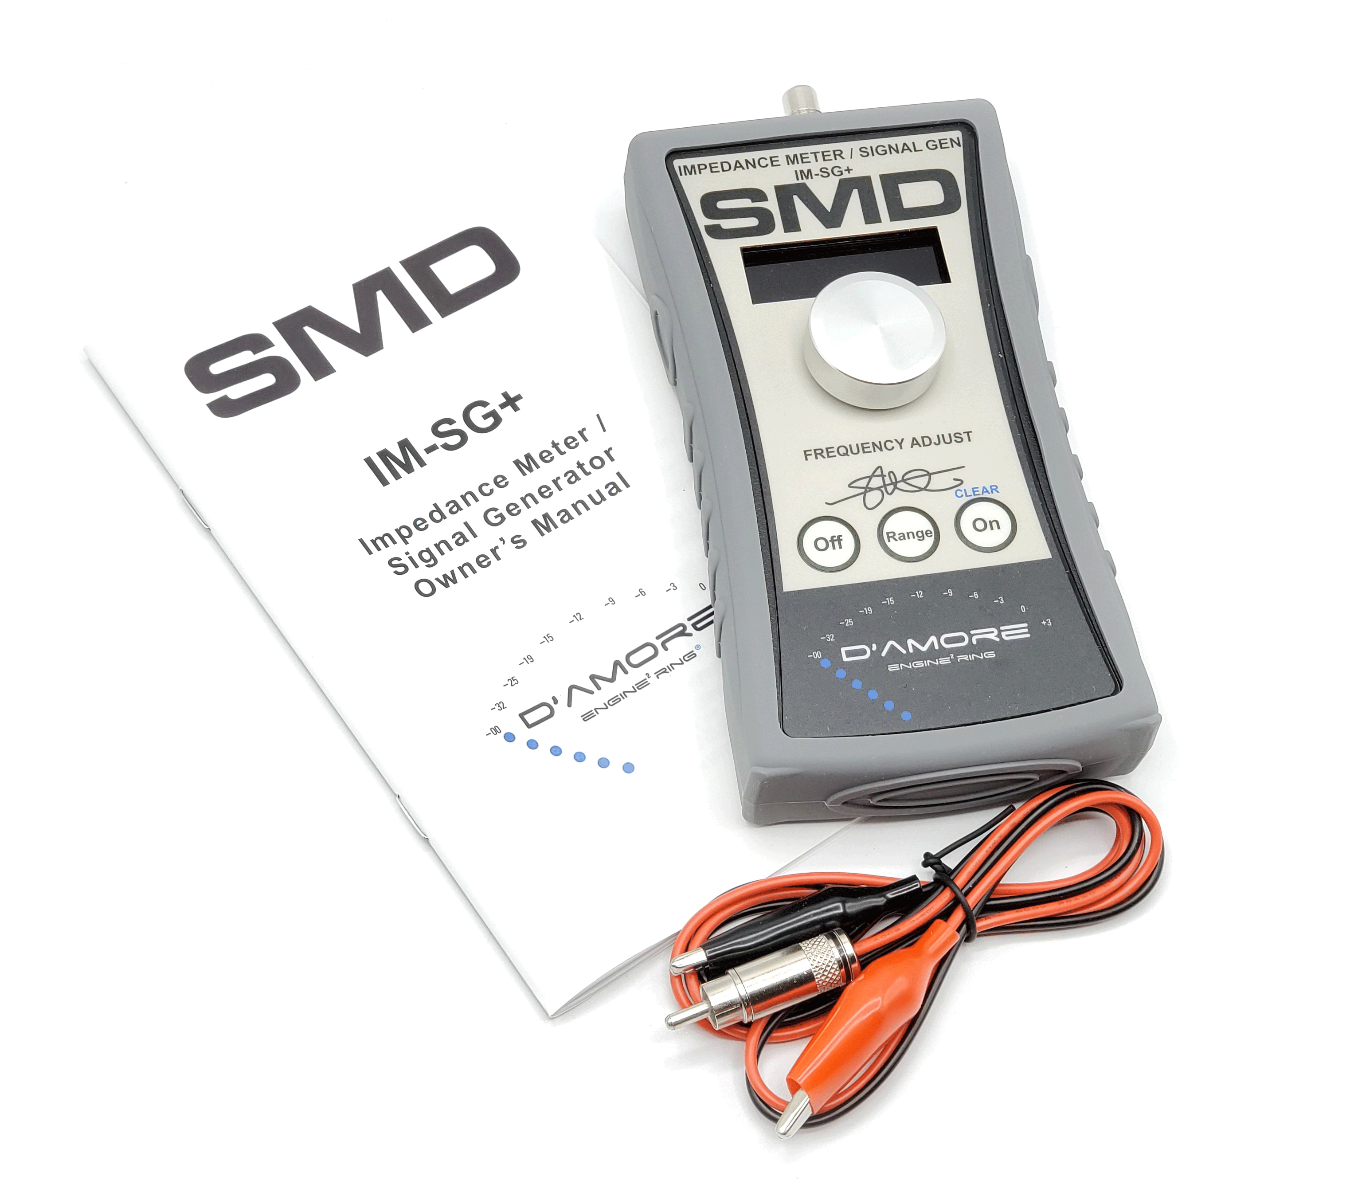 SMD IM-SG+ Impedance Meter / Signal Generator Plus